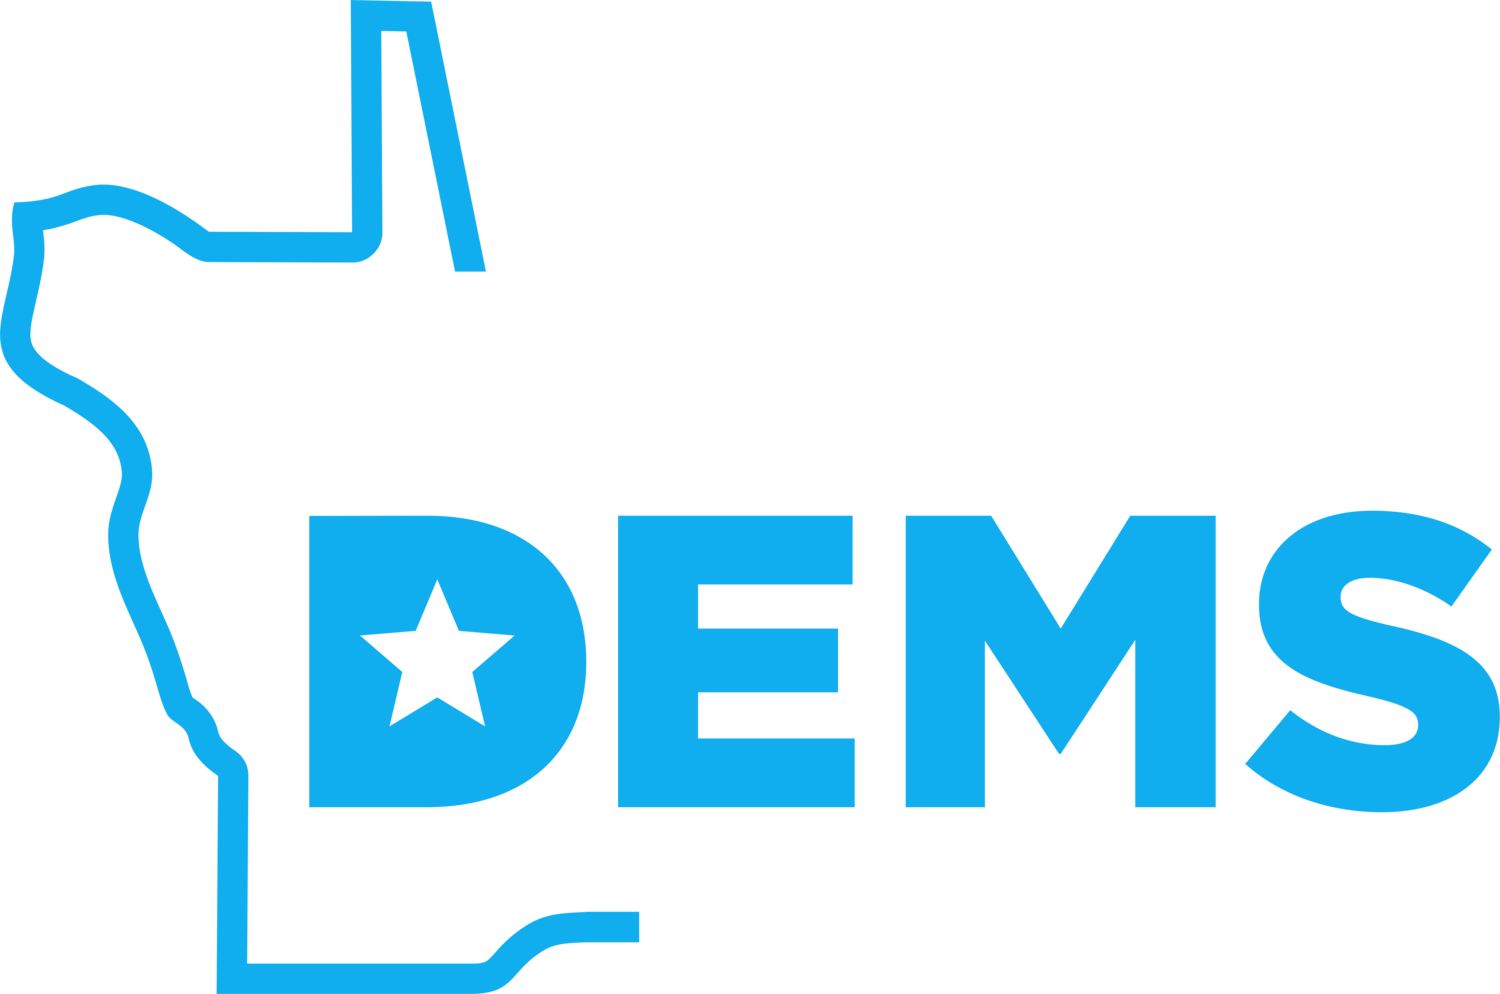 St. Johns Democrats